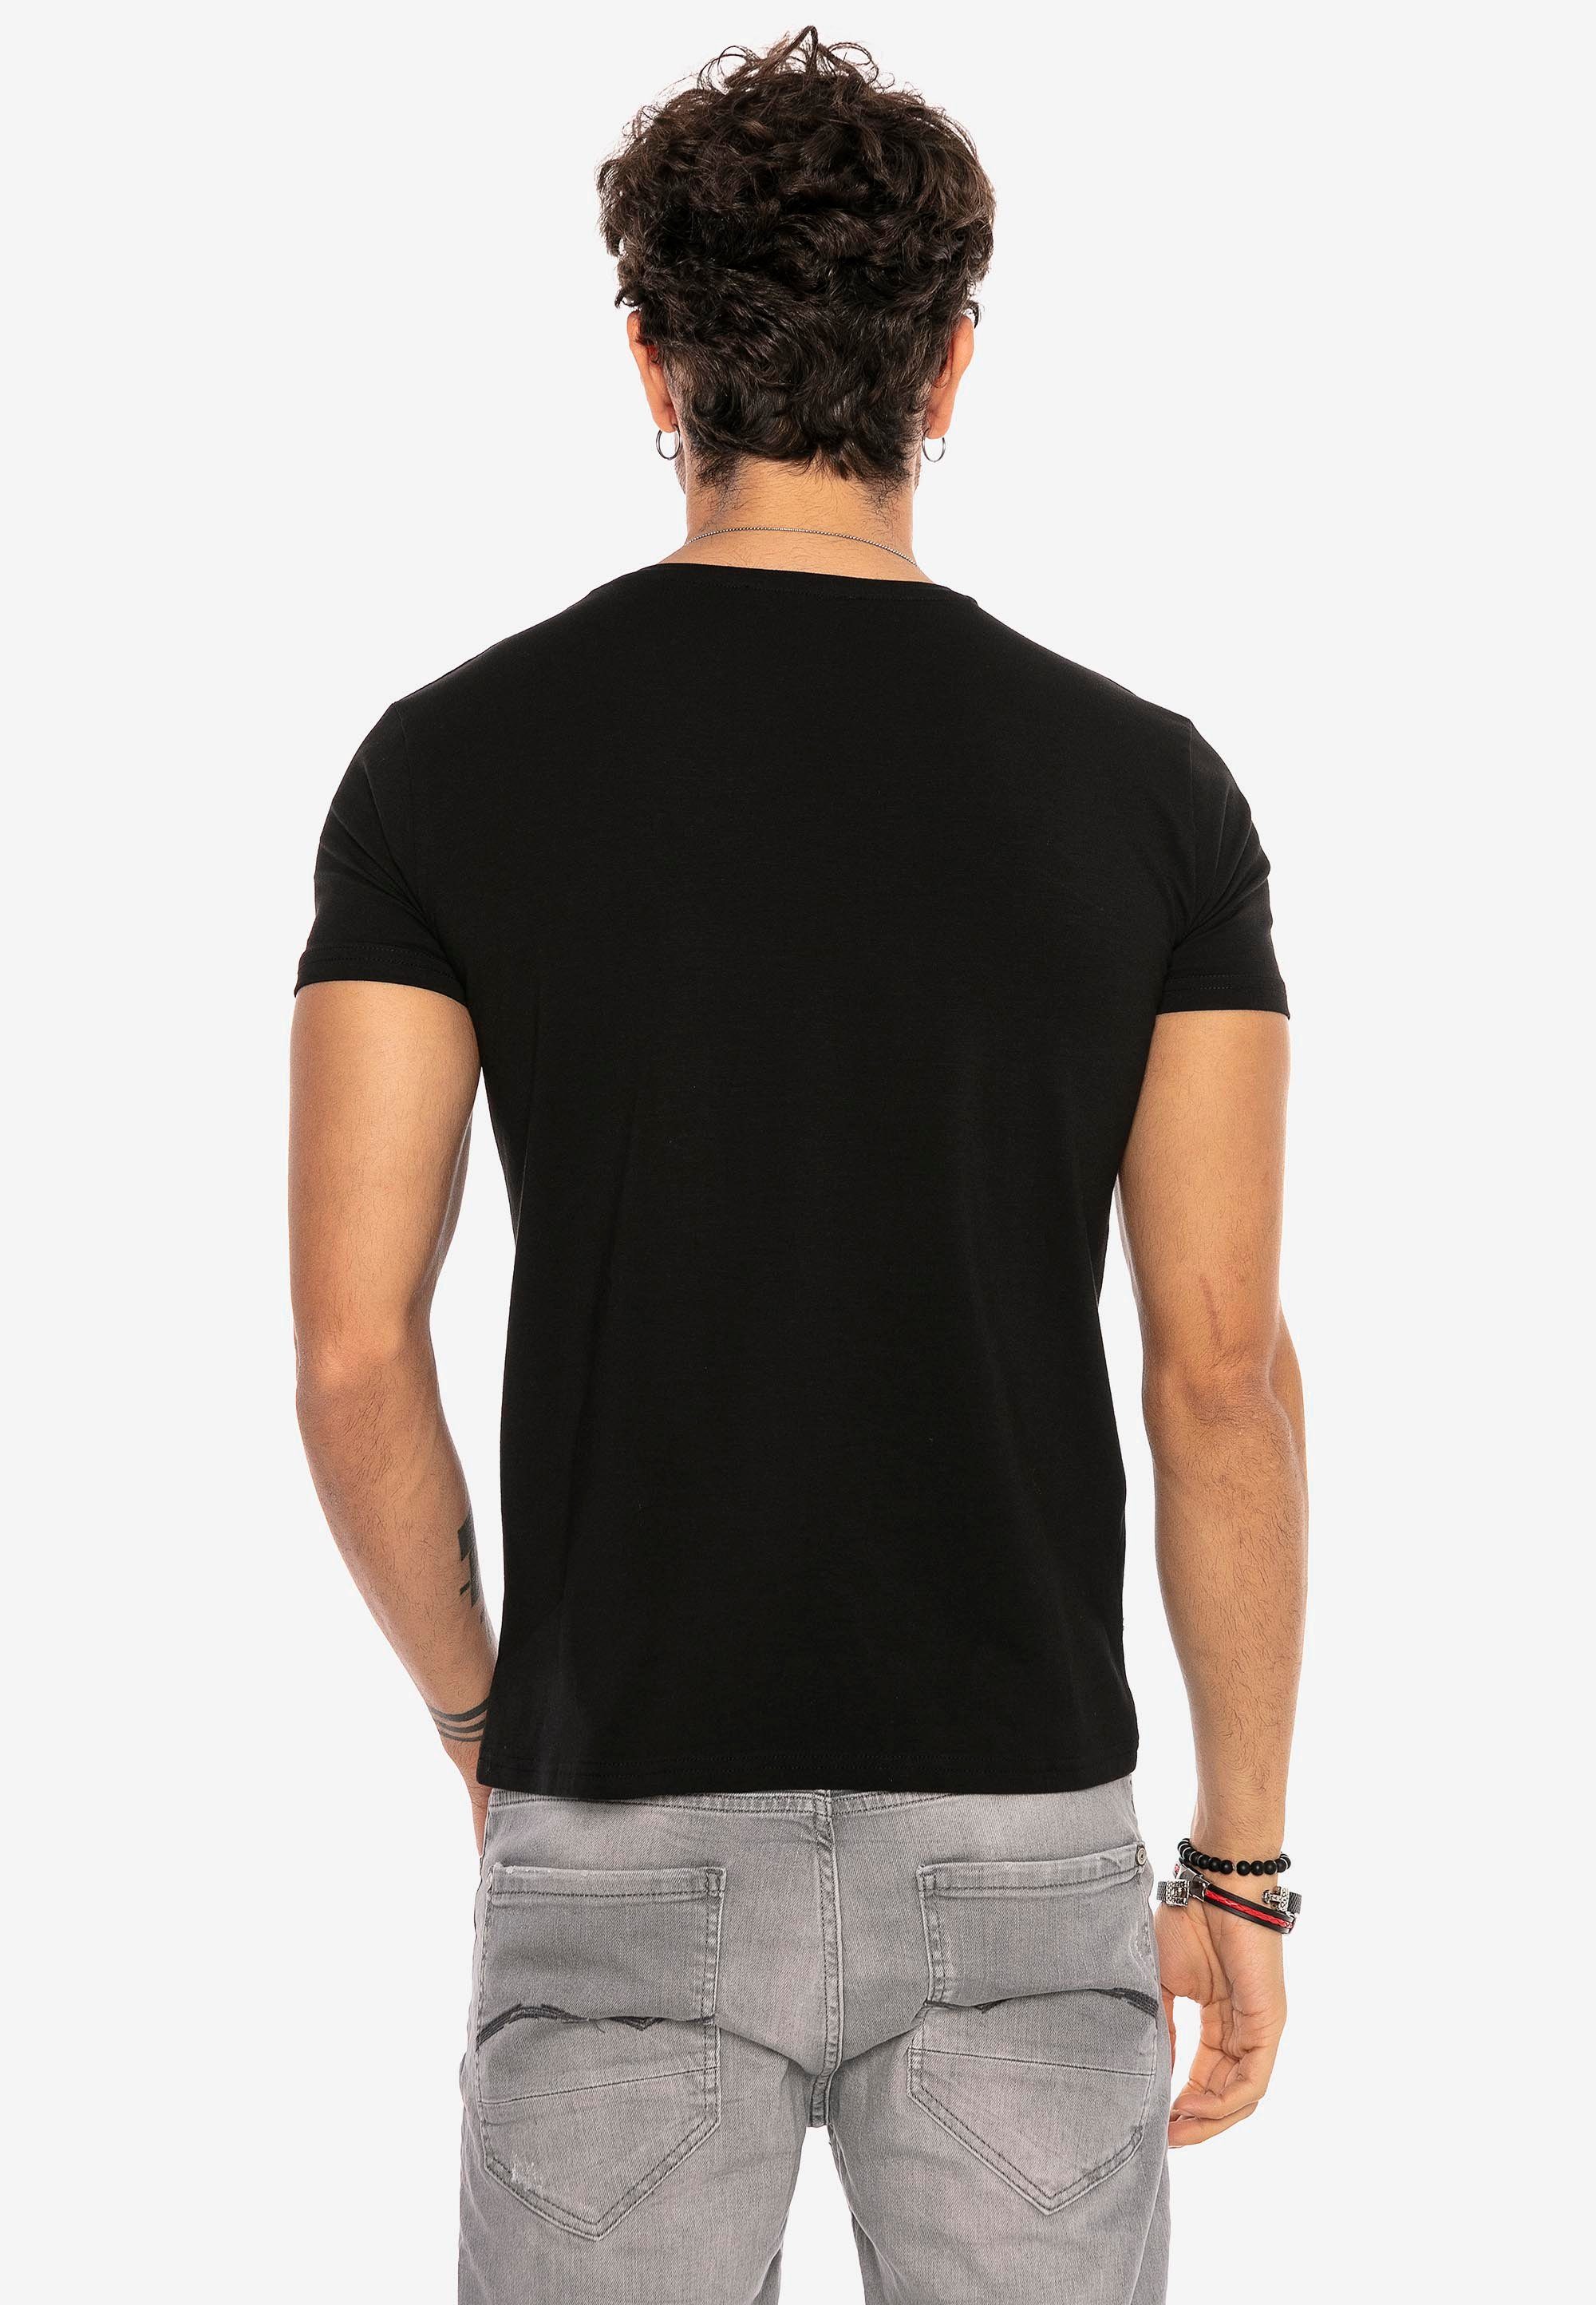 Design RedBridge T-Shirt schwarz Dayton in klassischem